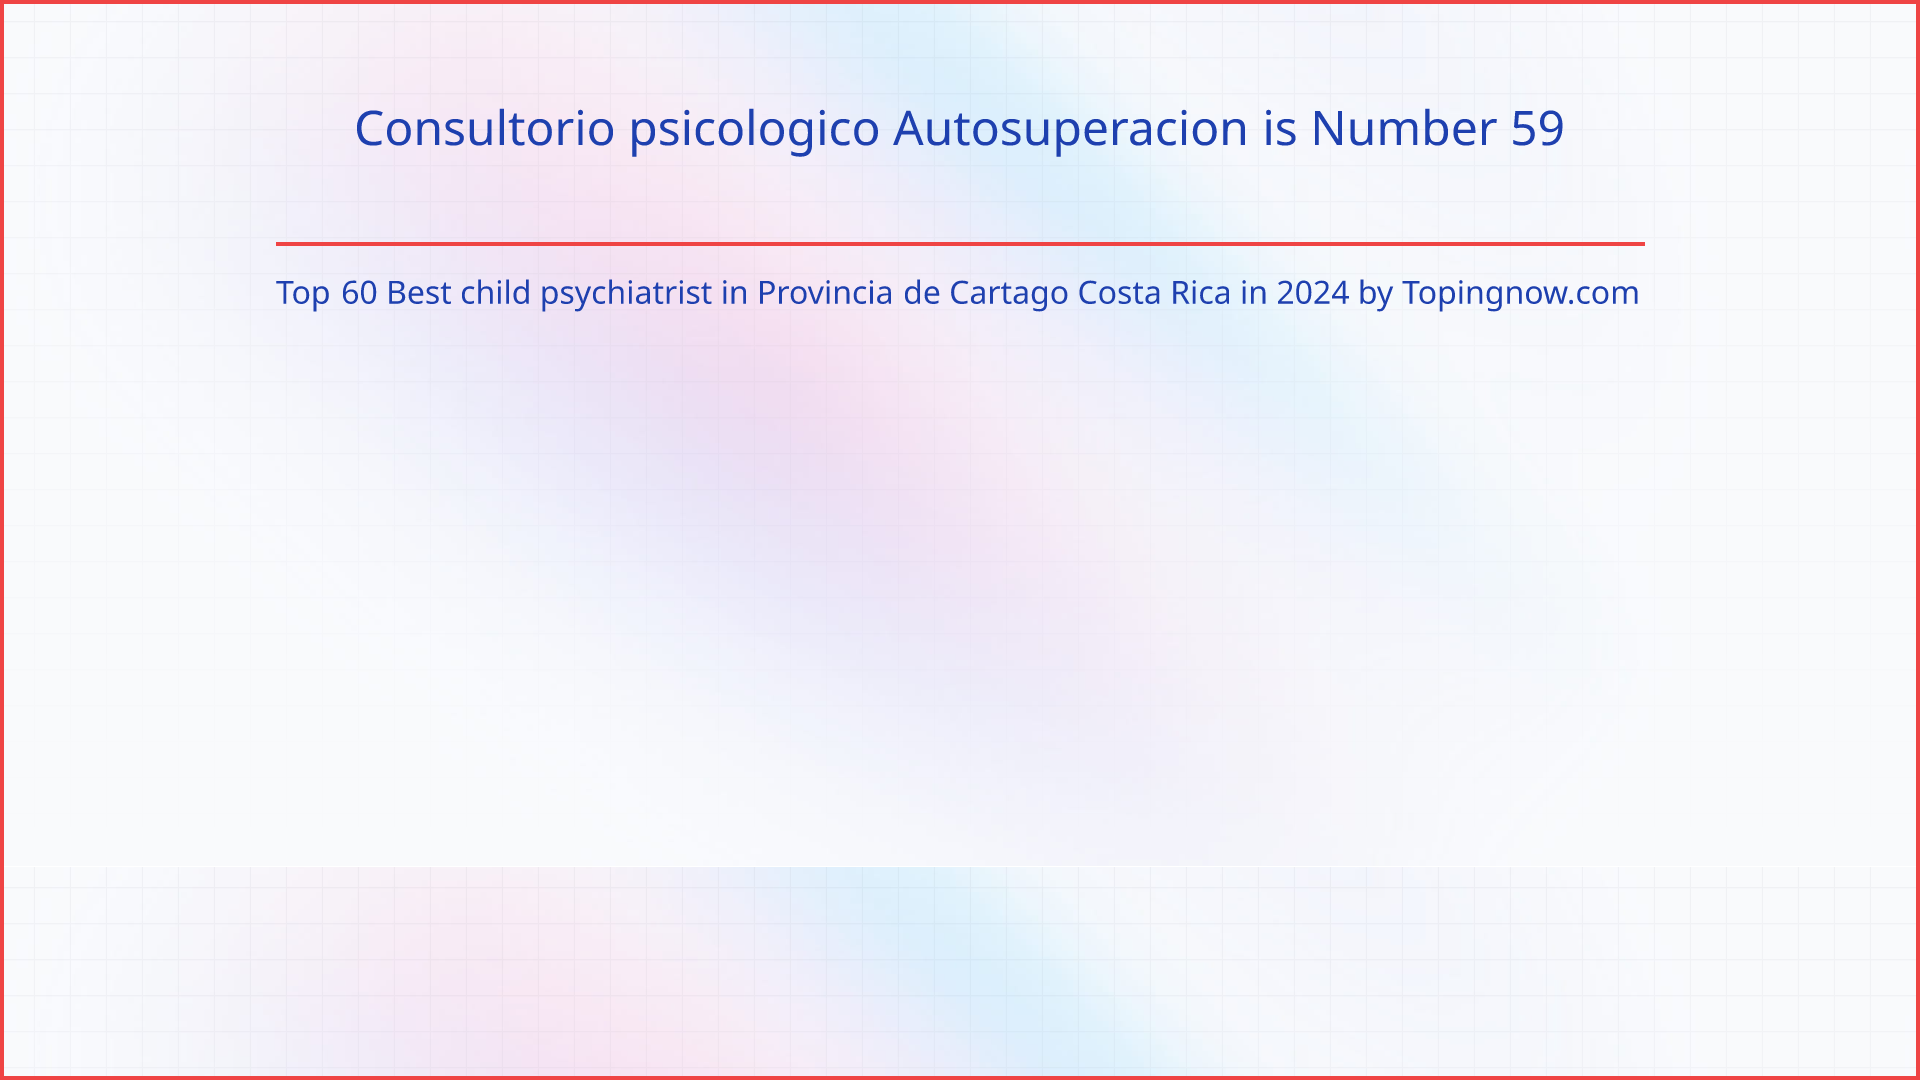 Consultorio psicologico Autosuperacion: Top 60 Best child psychiatrist in Provincia de Cartago Costa Rica in 2024